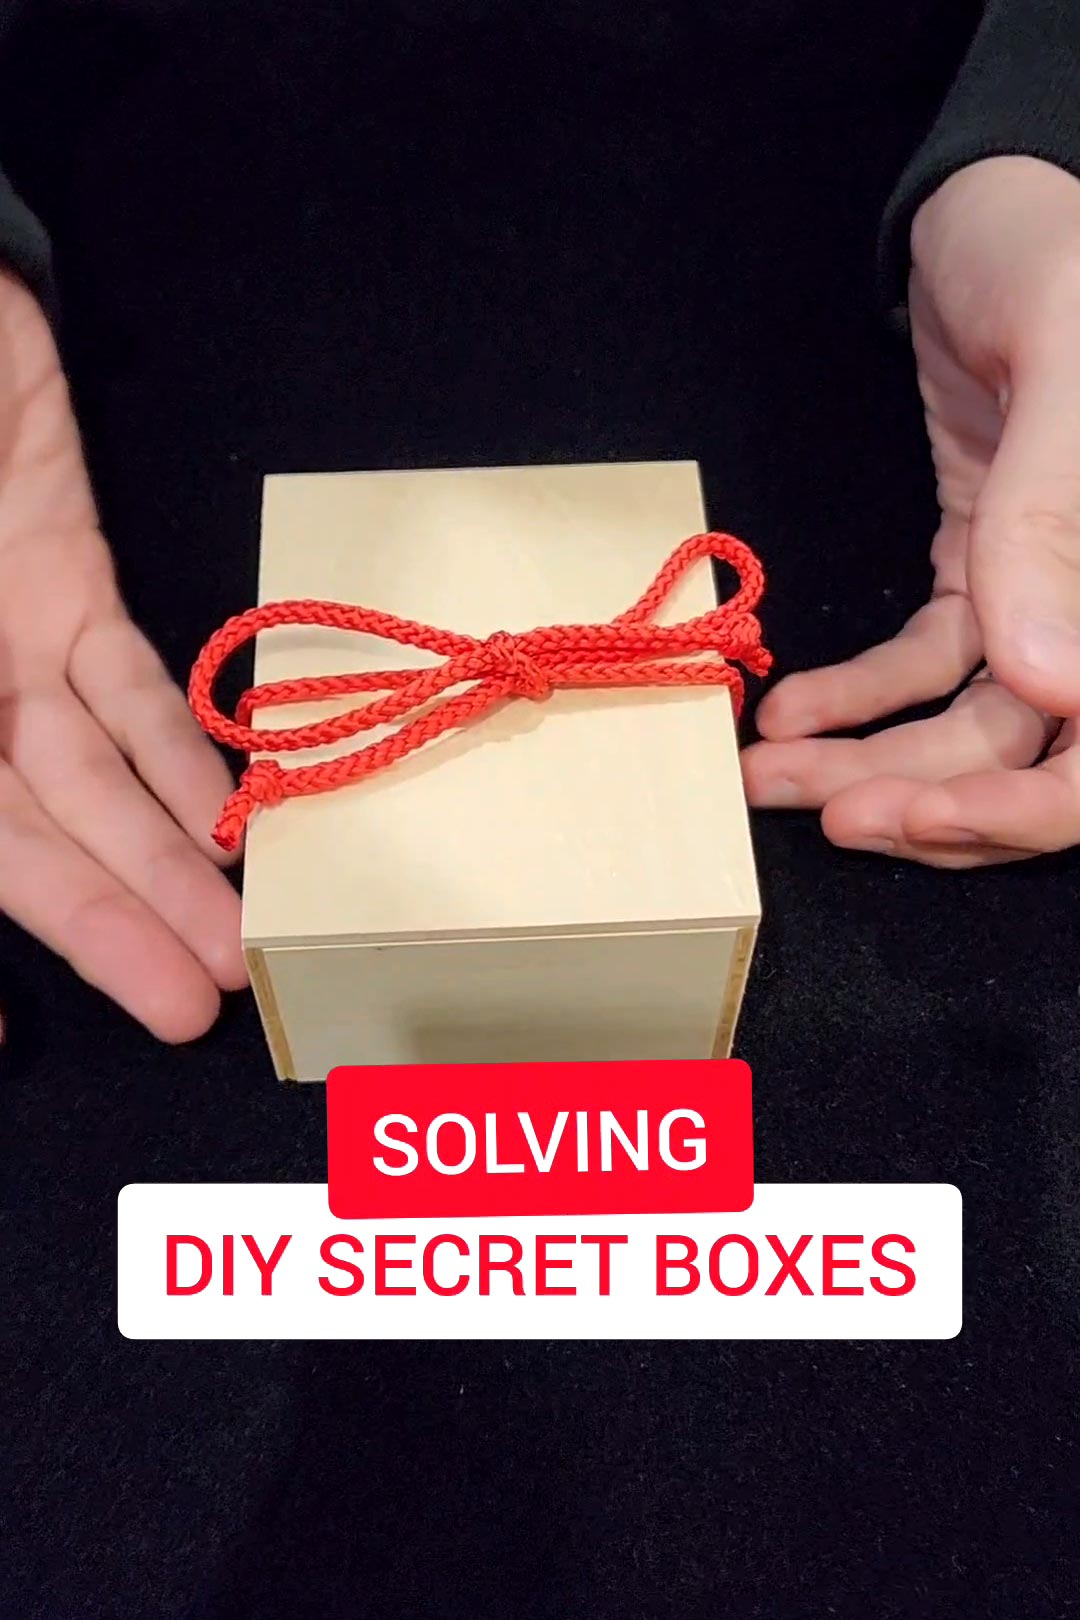 How to open the DIY Karakuri Secret Boxes